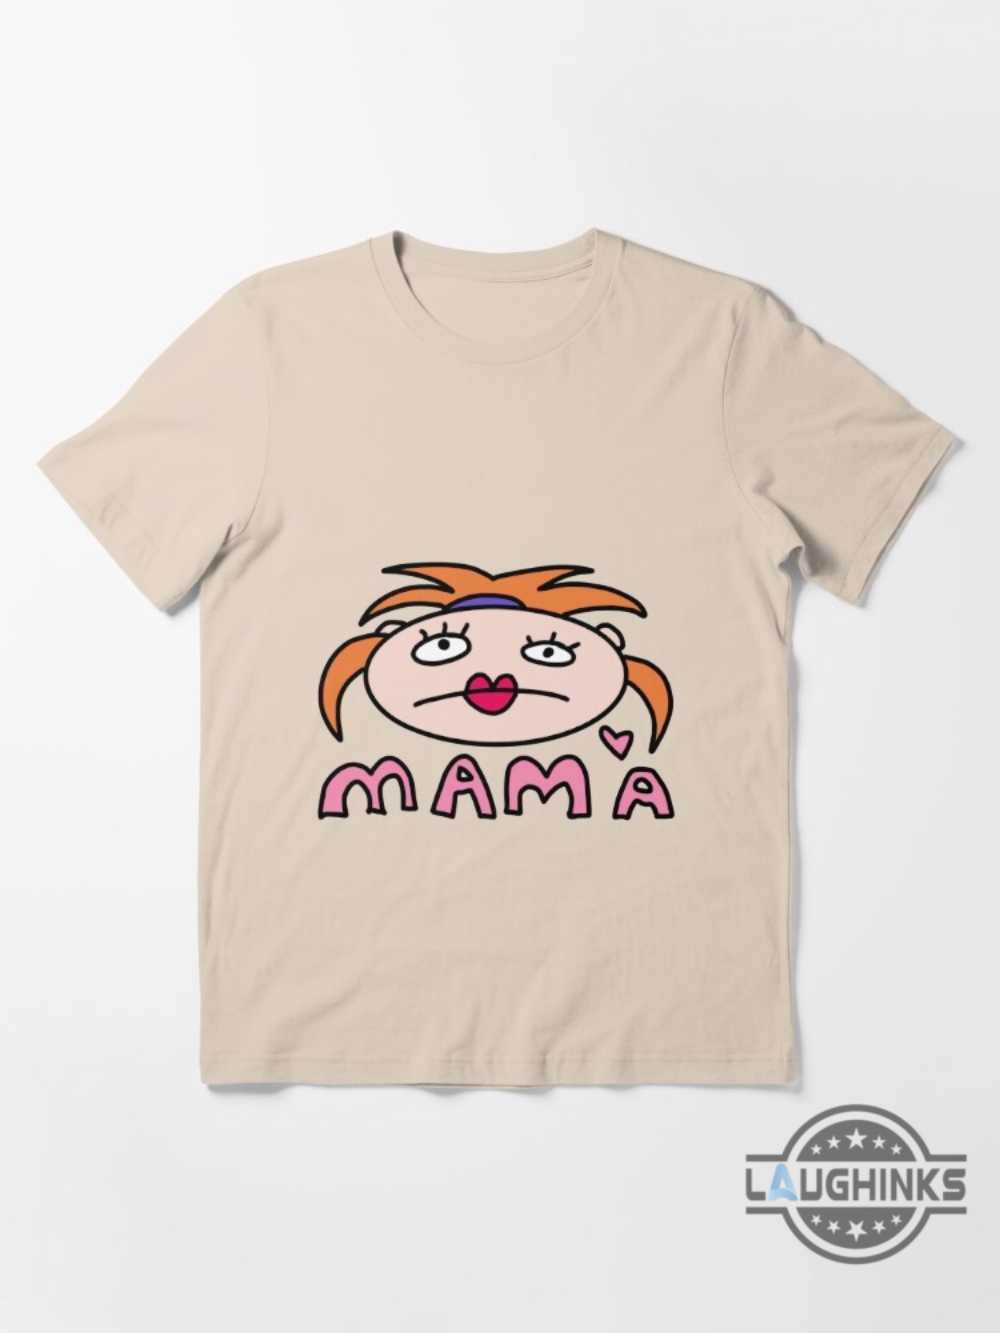 Zoro Mama Shirt Sweatshirt Hoodie Mens Womens One Piece Zoro Wearing Mama Shirts Episode Zoro In Mama Tshirt Zoro Roronoa Funny Mama Tee